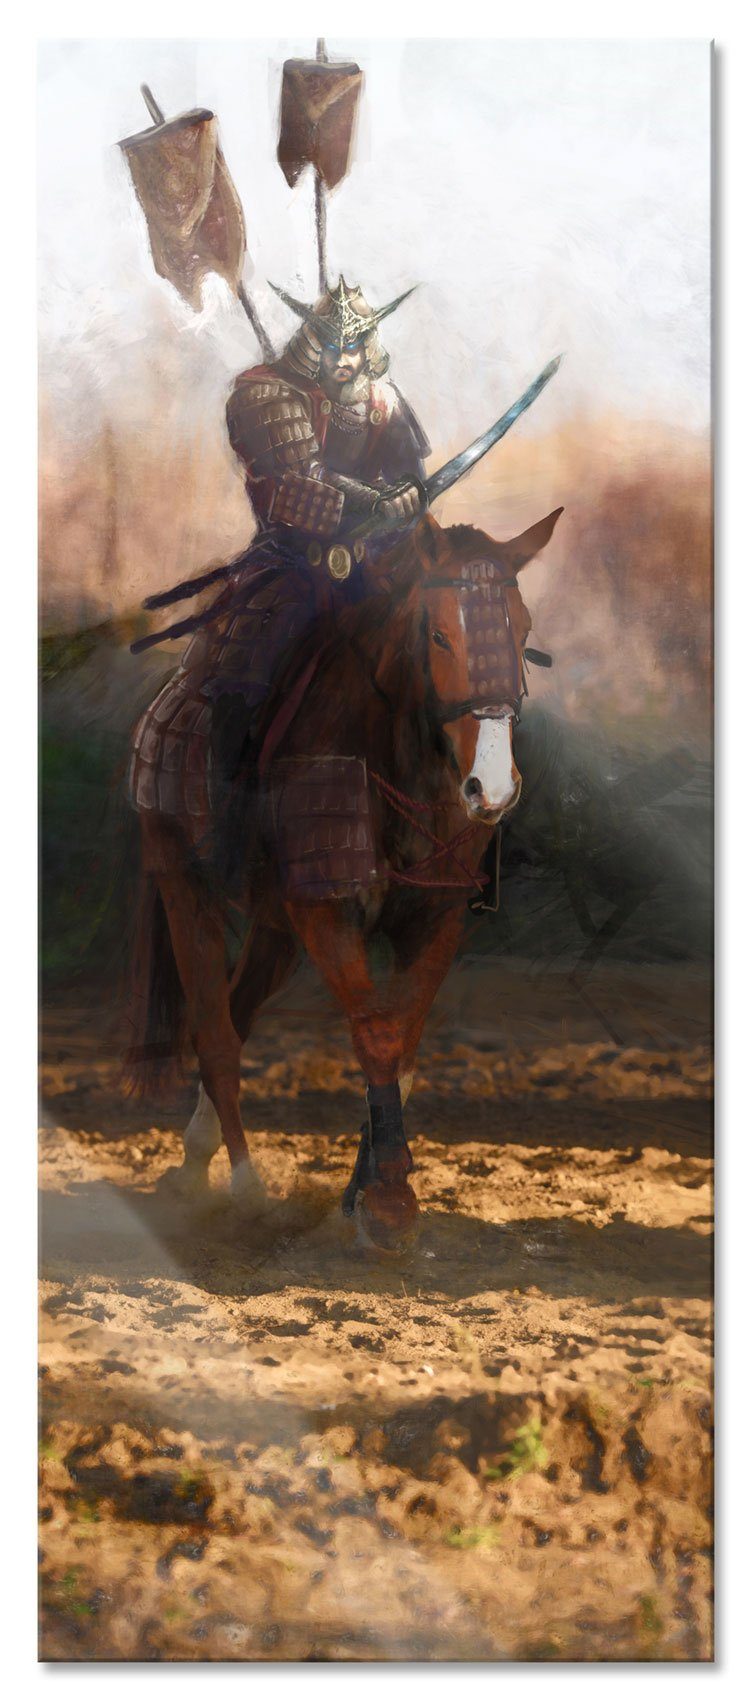 Pixxprint Glasbild Samurai Krieger auf einem Pferd, Samurai Krieger auf einem Pferd (1 St), Glasbild aus Echtglas, inkl. Aufhängungen und Abstandshalter